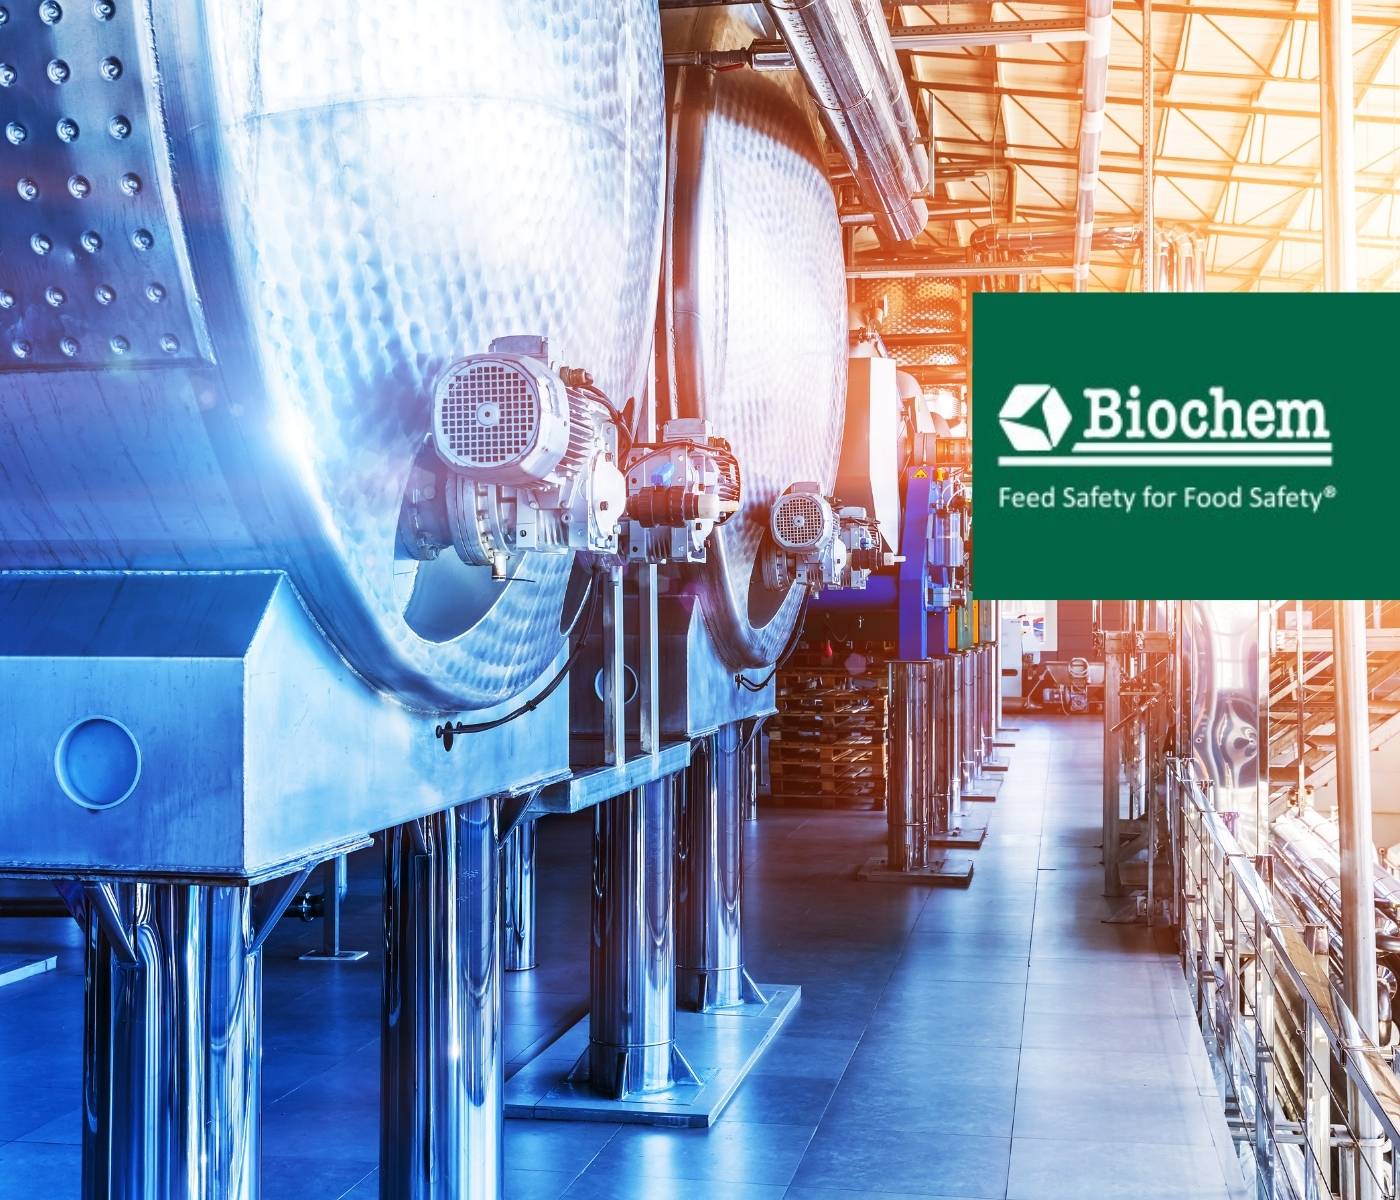 Biochem foca em crescimento com expansão da fábrica de aditivos na Alemanha